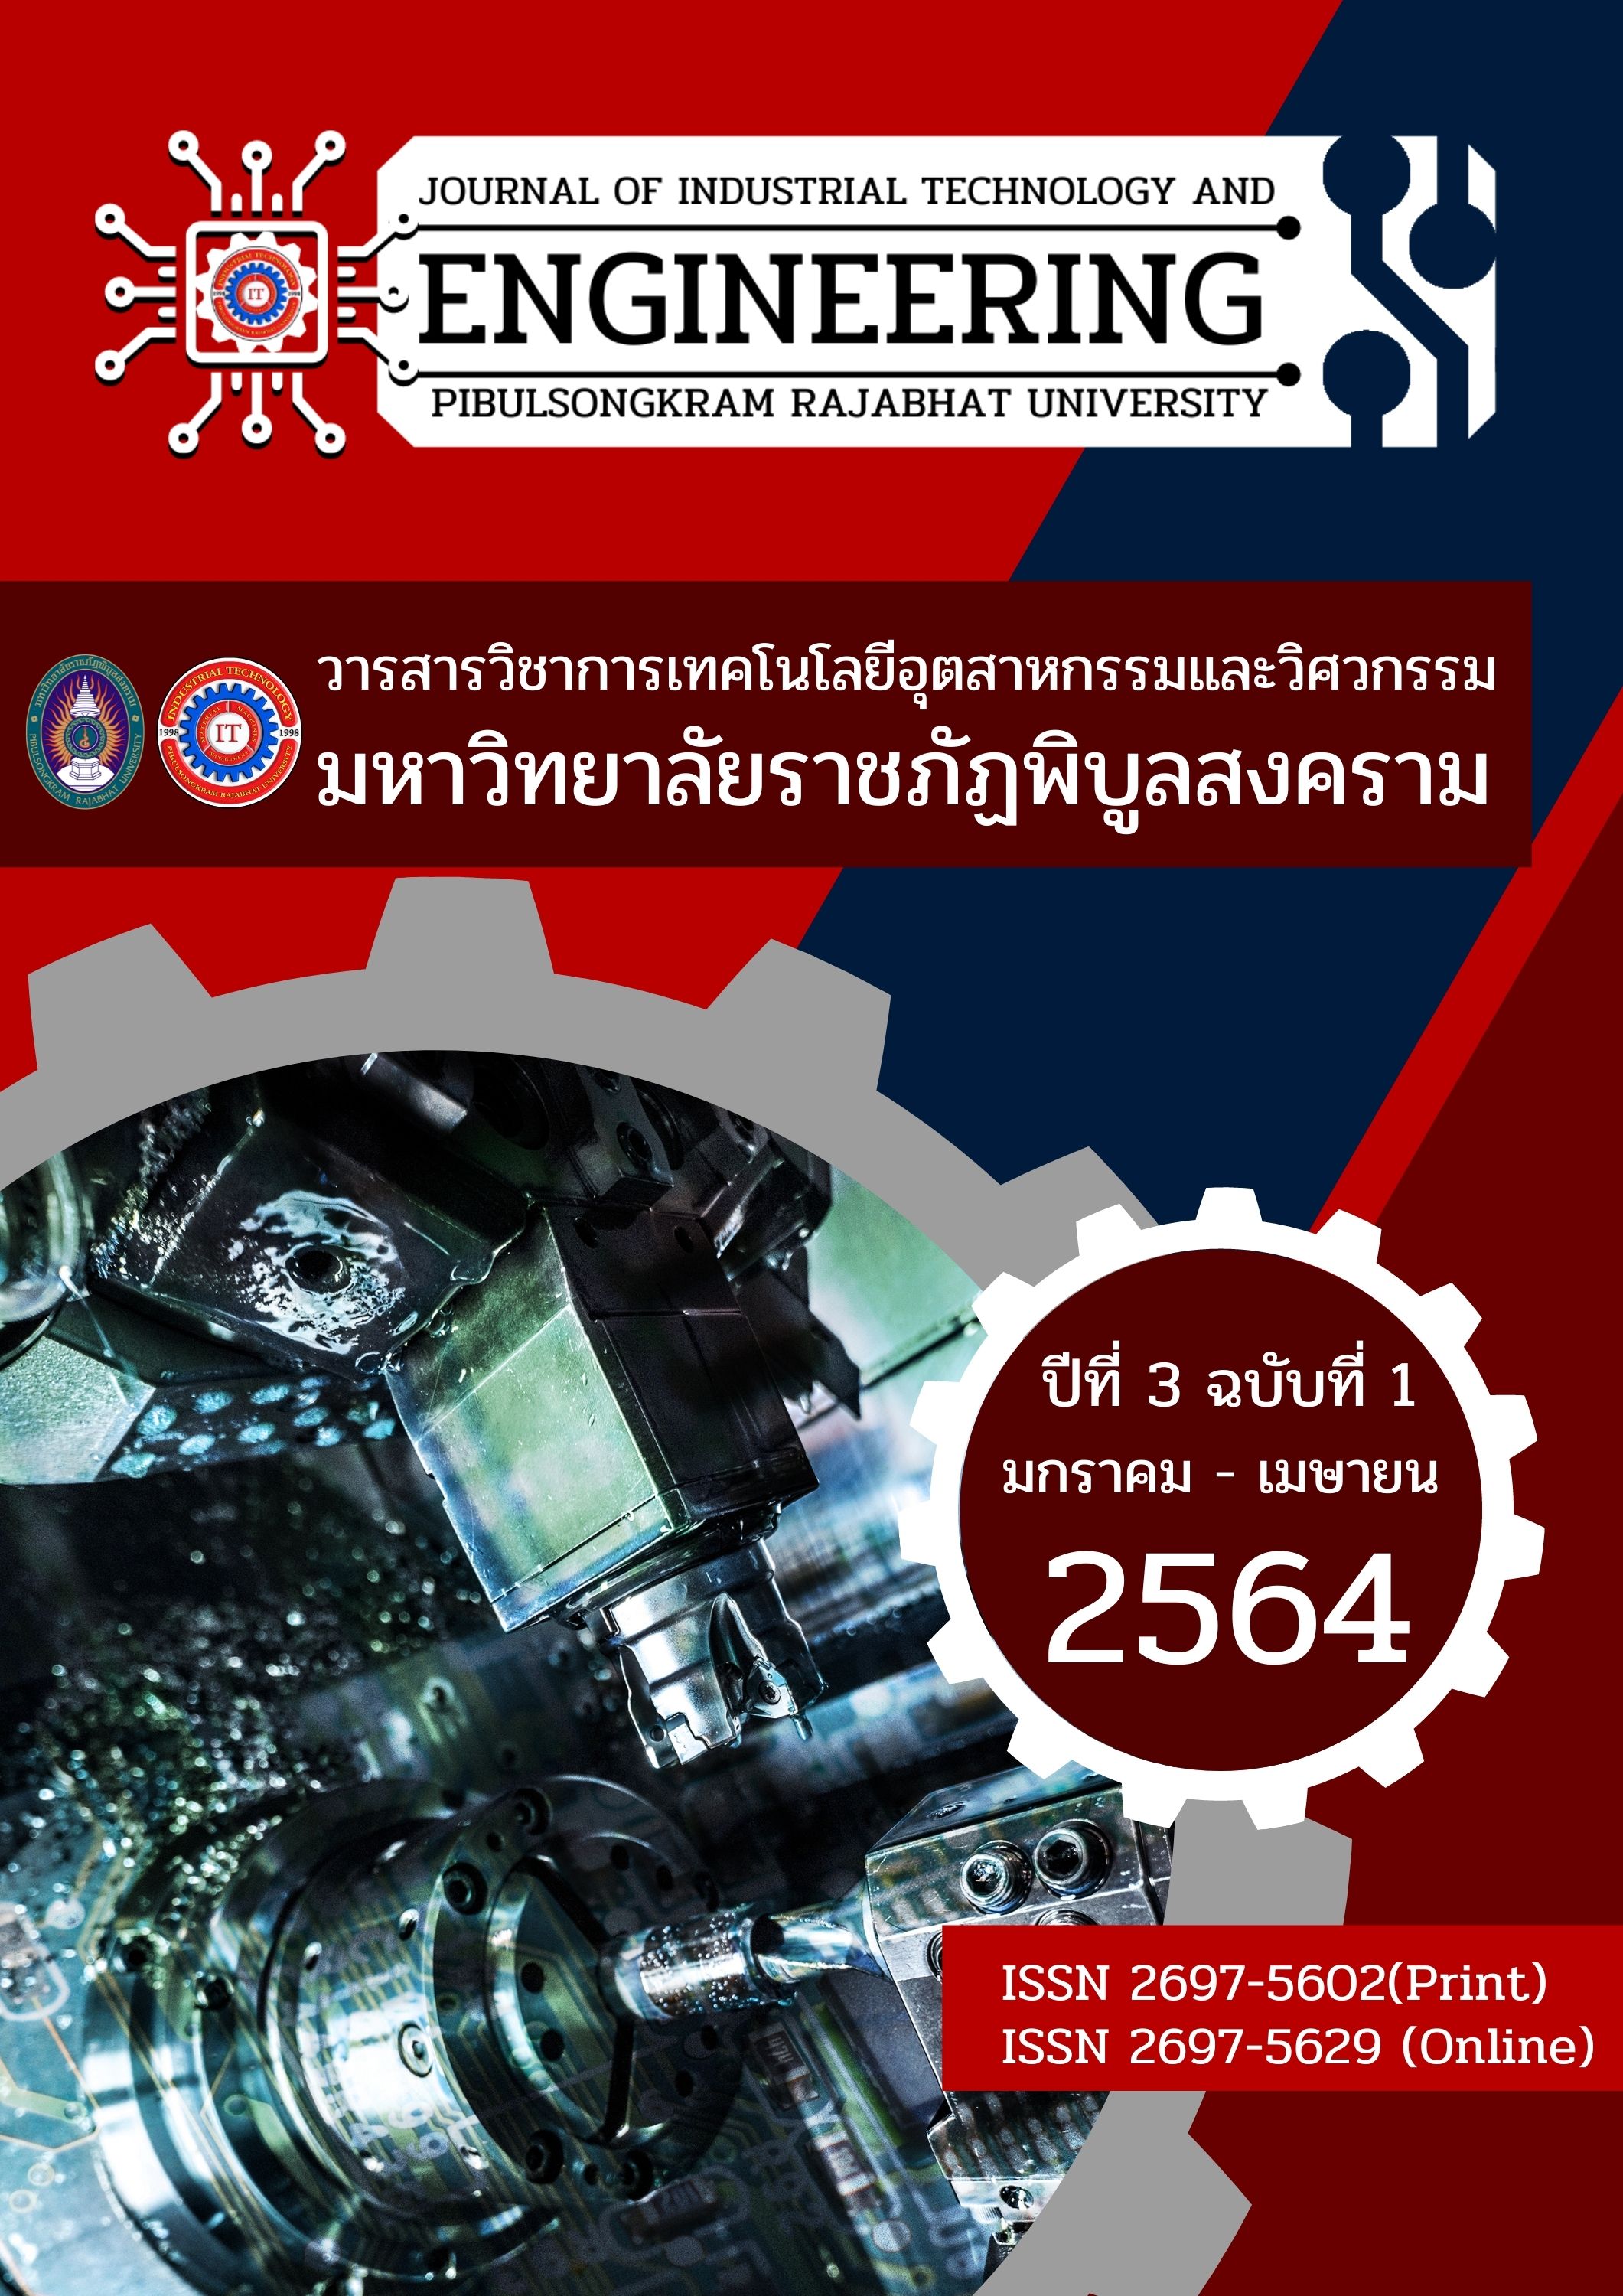 					ดู ปีที่ 3 ฉบับที่ 1 (2021): January 2021 - April 2021 (PSRU Journal of Industrial Technology and Engineering)
				